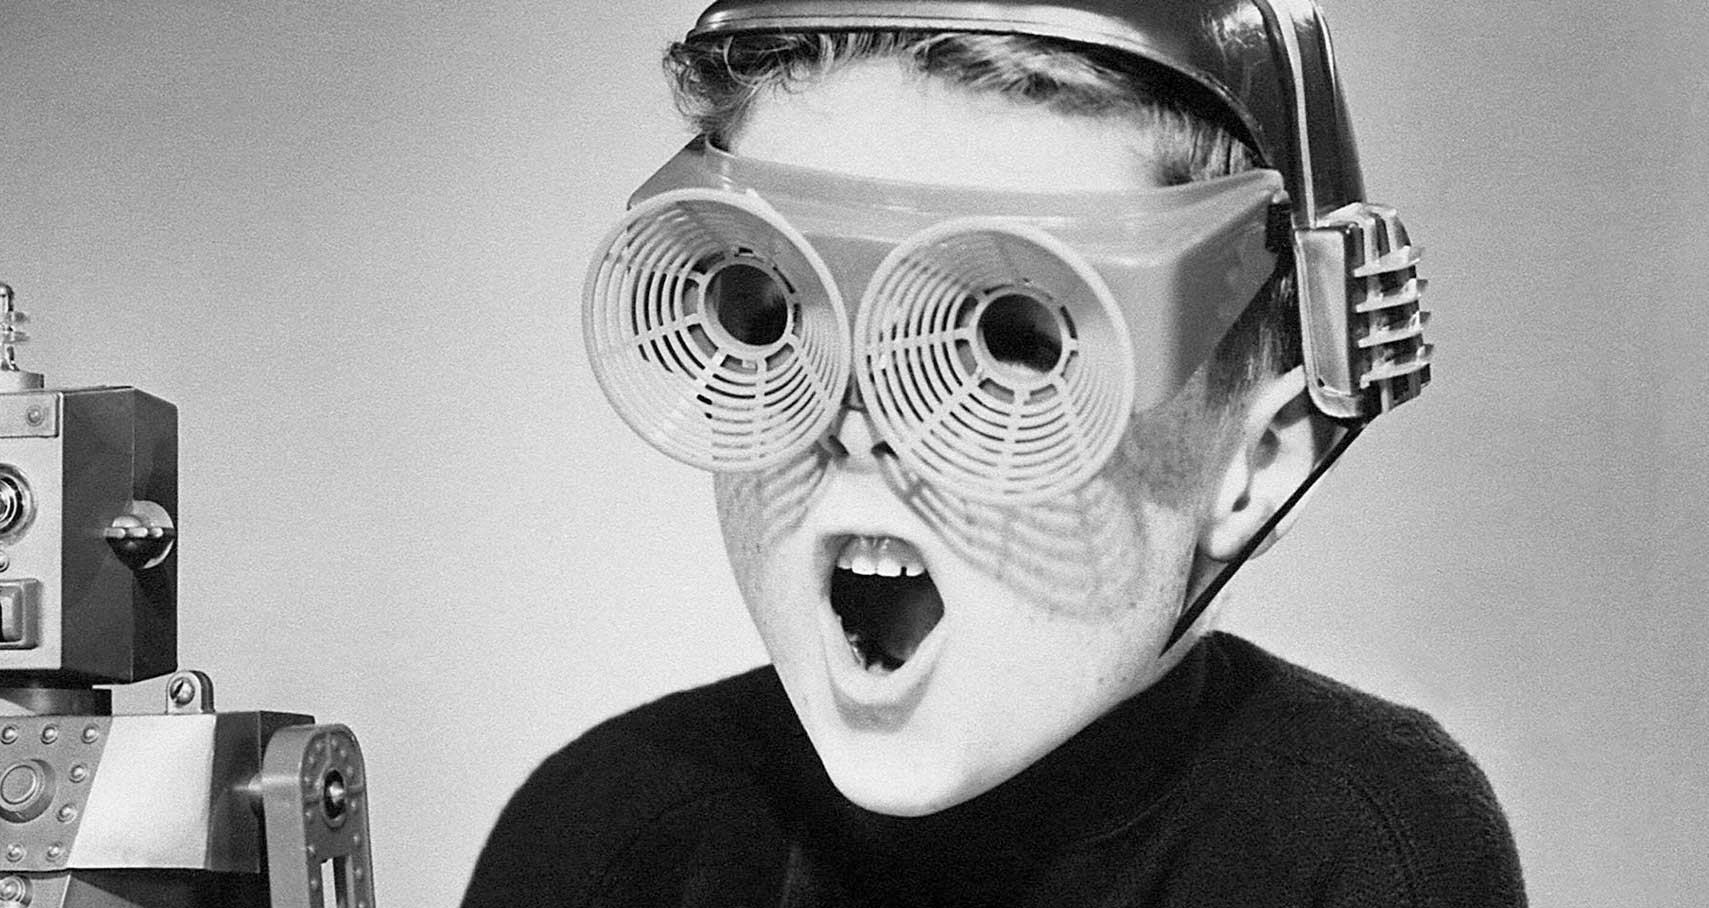 Image archive noir et blanc, garçon avec lunettes en plastiques